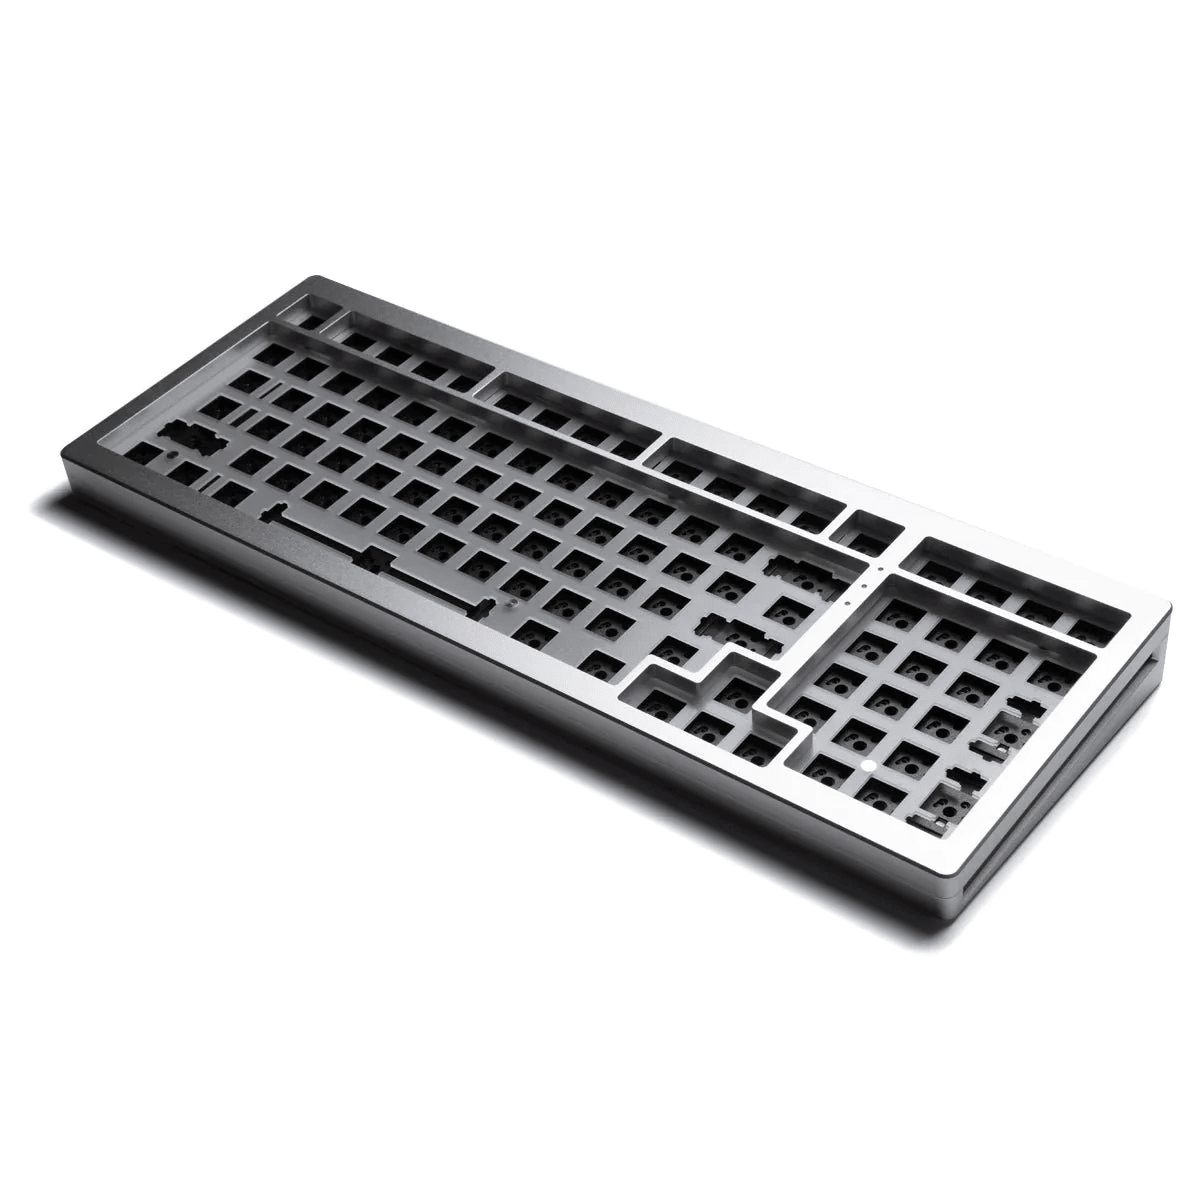 Monsgeek M2 1800 - Barebones Keyboard Kit